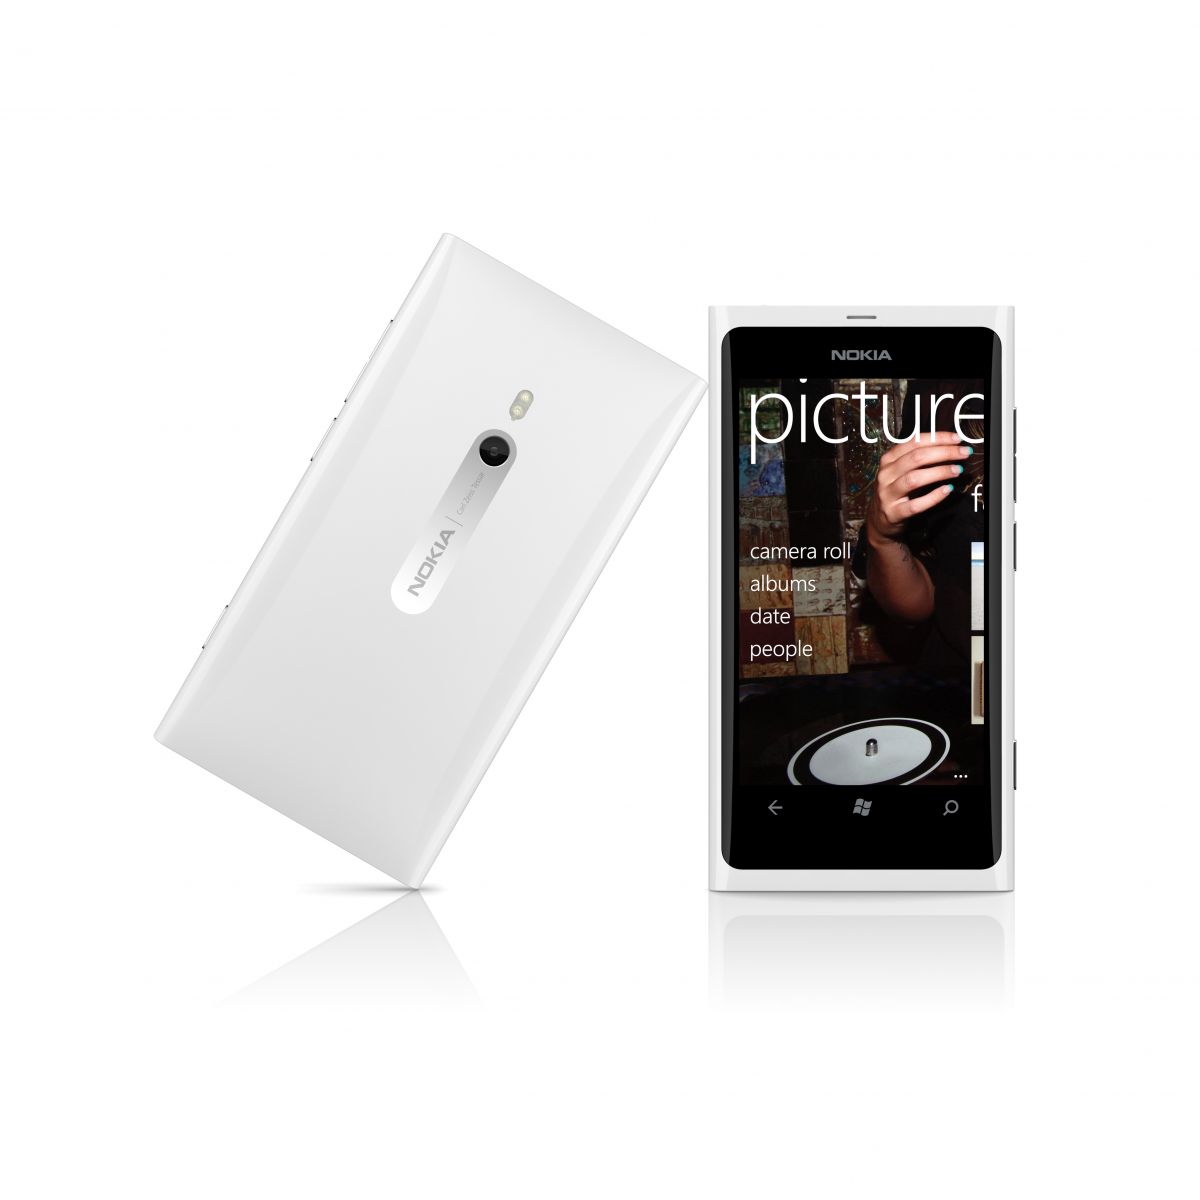 Immagine pubblicata in relazione al seguente contenuto: Nokia lancia lo smartphone Nokia Lumia 800 in versione bianca | Nome immagine: news16600_1.jpg